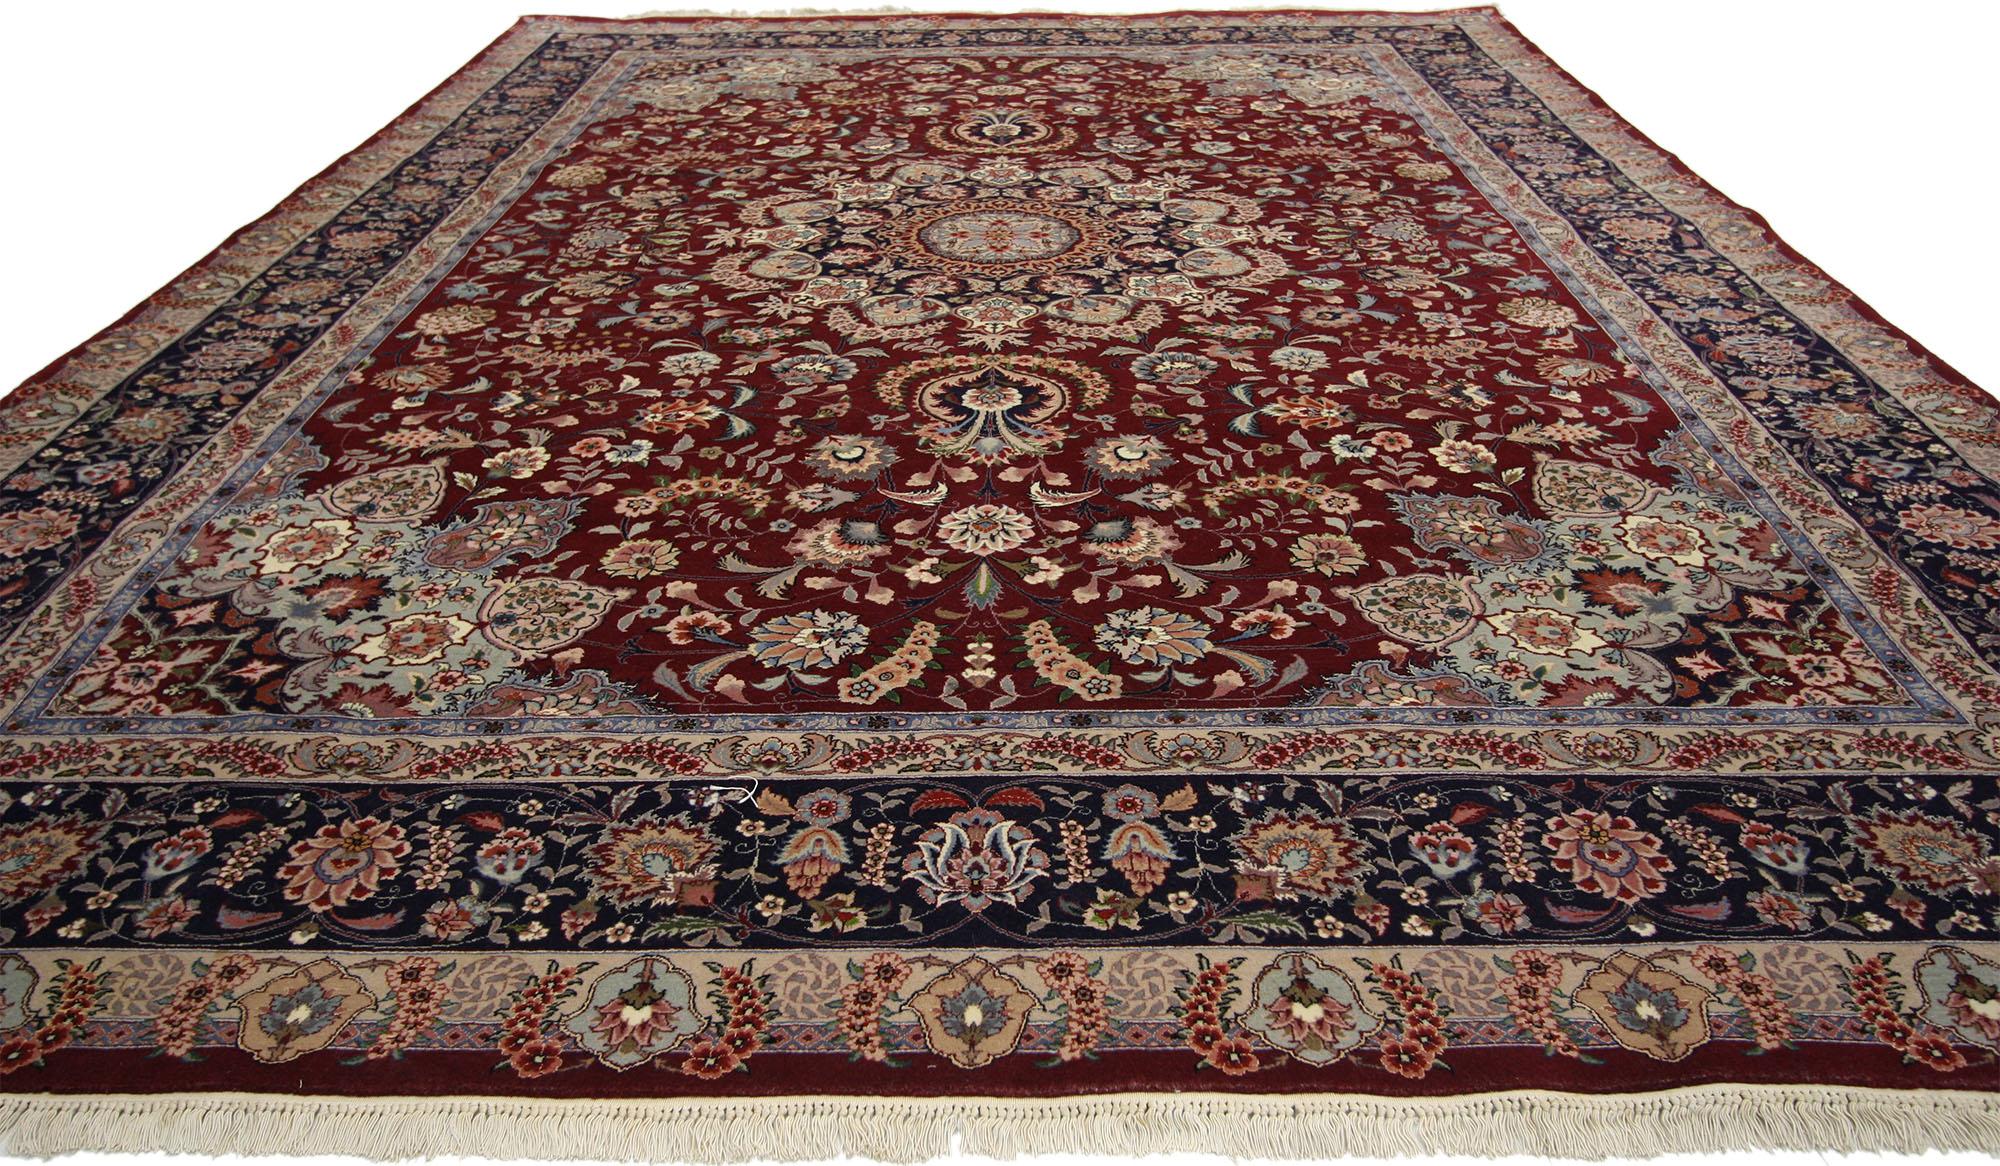 77142 Tapis de style persan vintage avec un style regency baroque arabisant. Ce tapis de style persan vintage Mashhad, en laine et soie nouées à la main, présente un médaillon central orné de 16 points entouré d'un motif floral et d'écoinçons